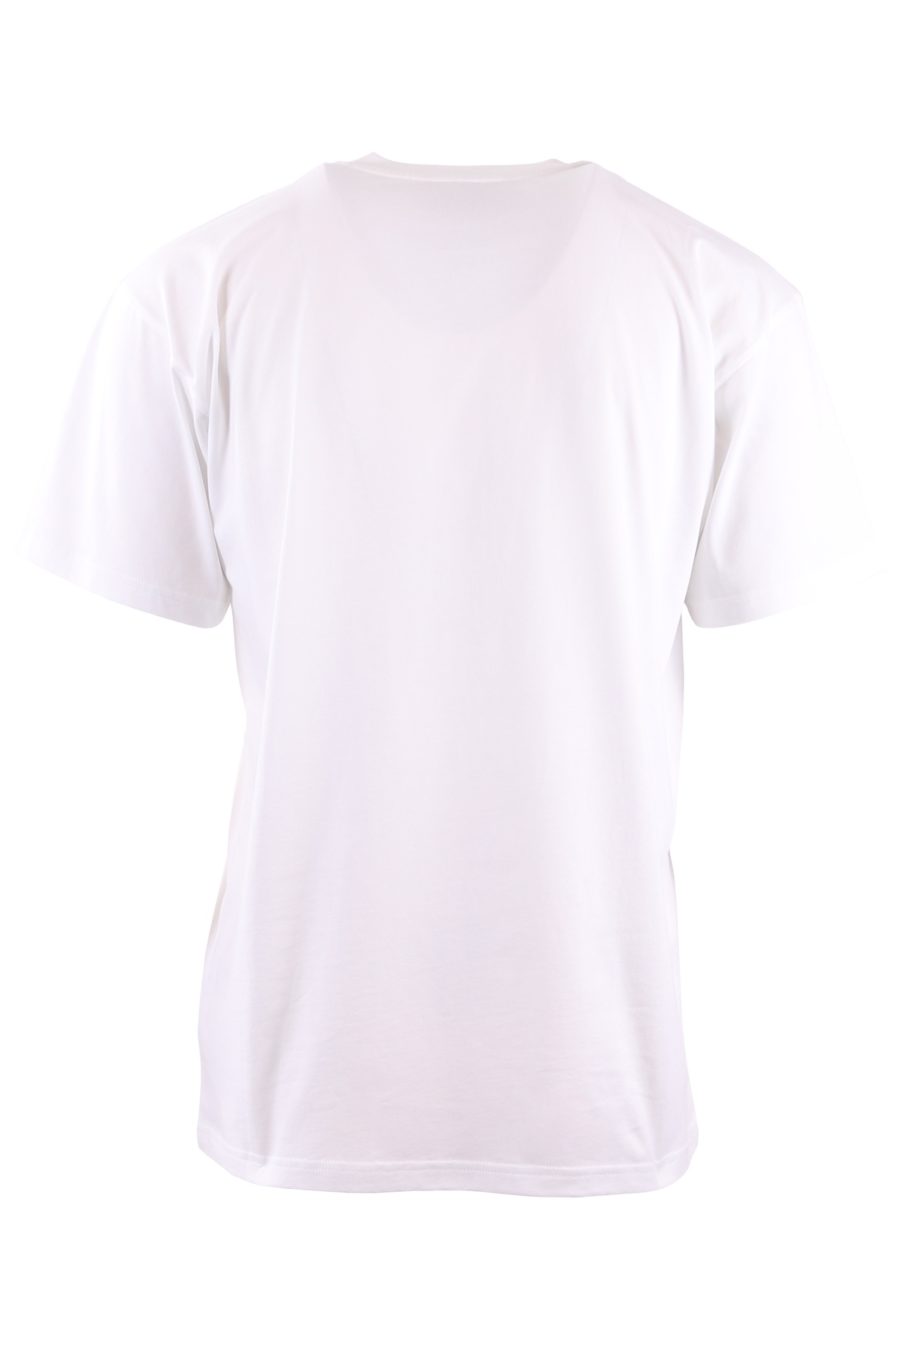 Moschino Couture T-shirt branca oversize com urso grande - 6c7718be4979da96f15fad71e14a796f46c6ec47